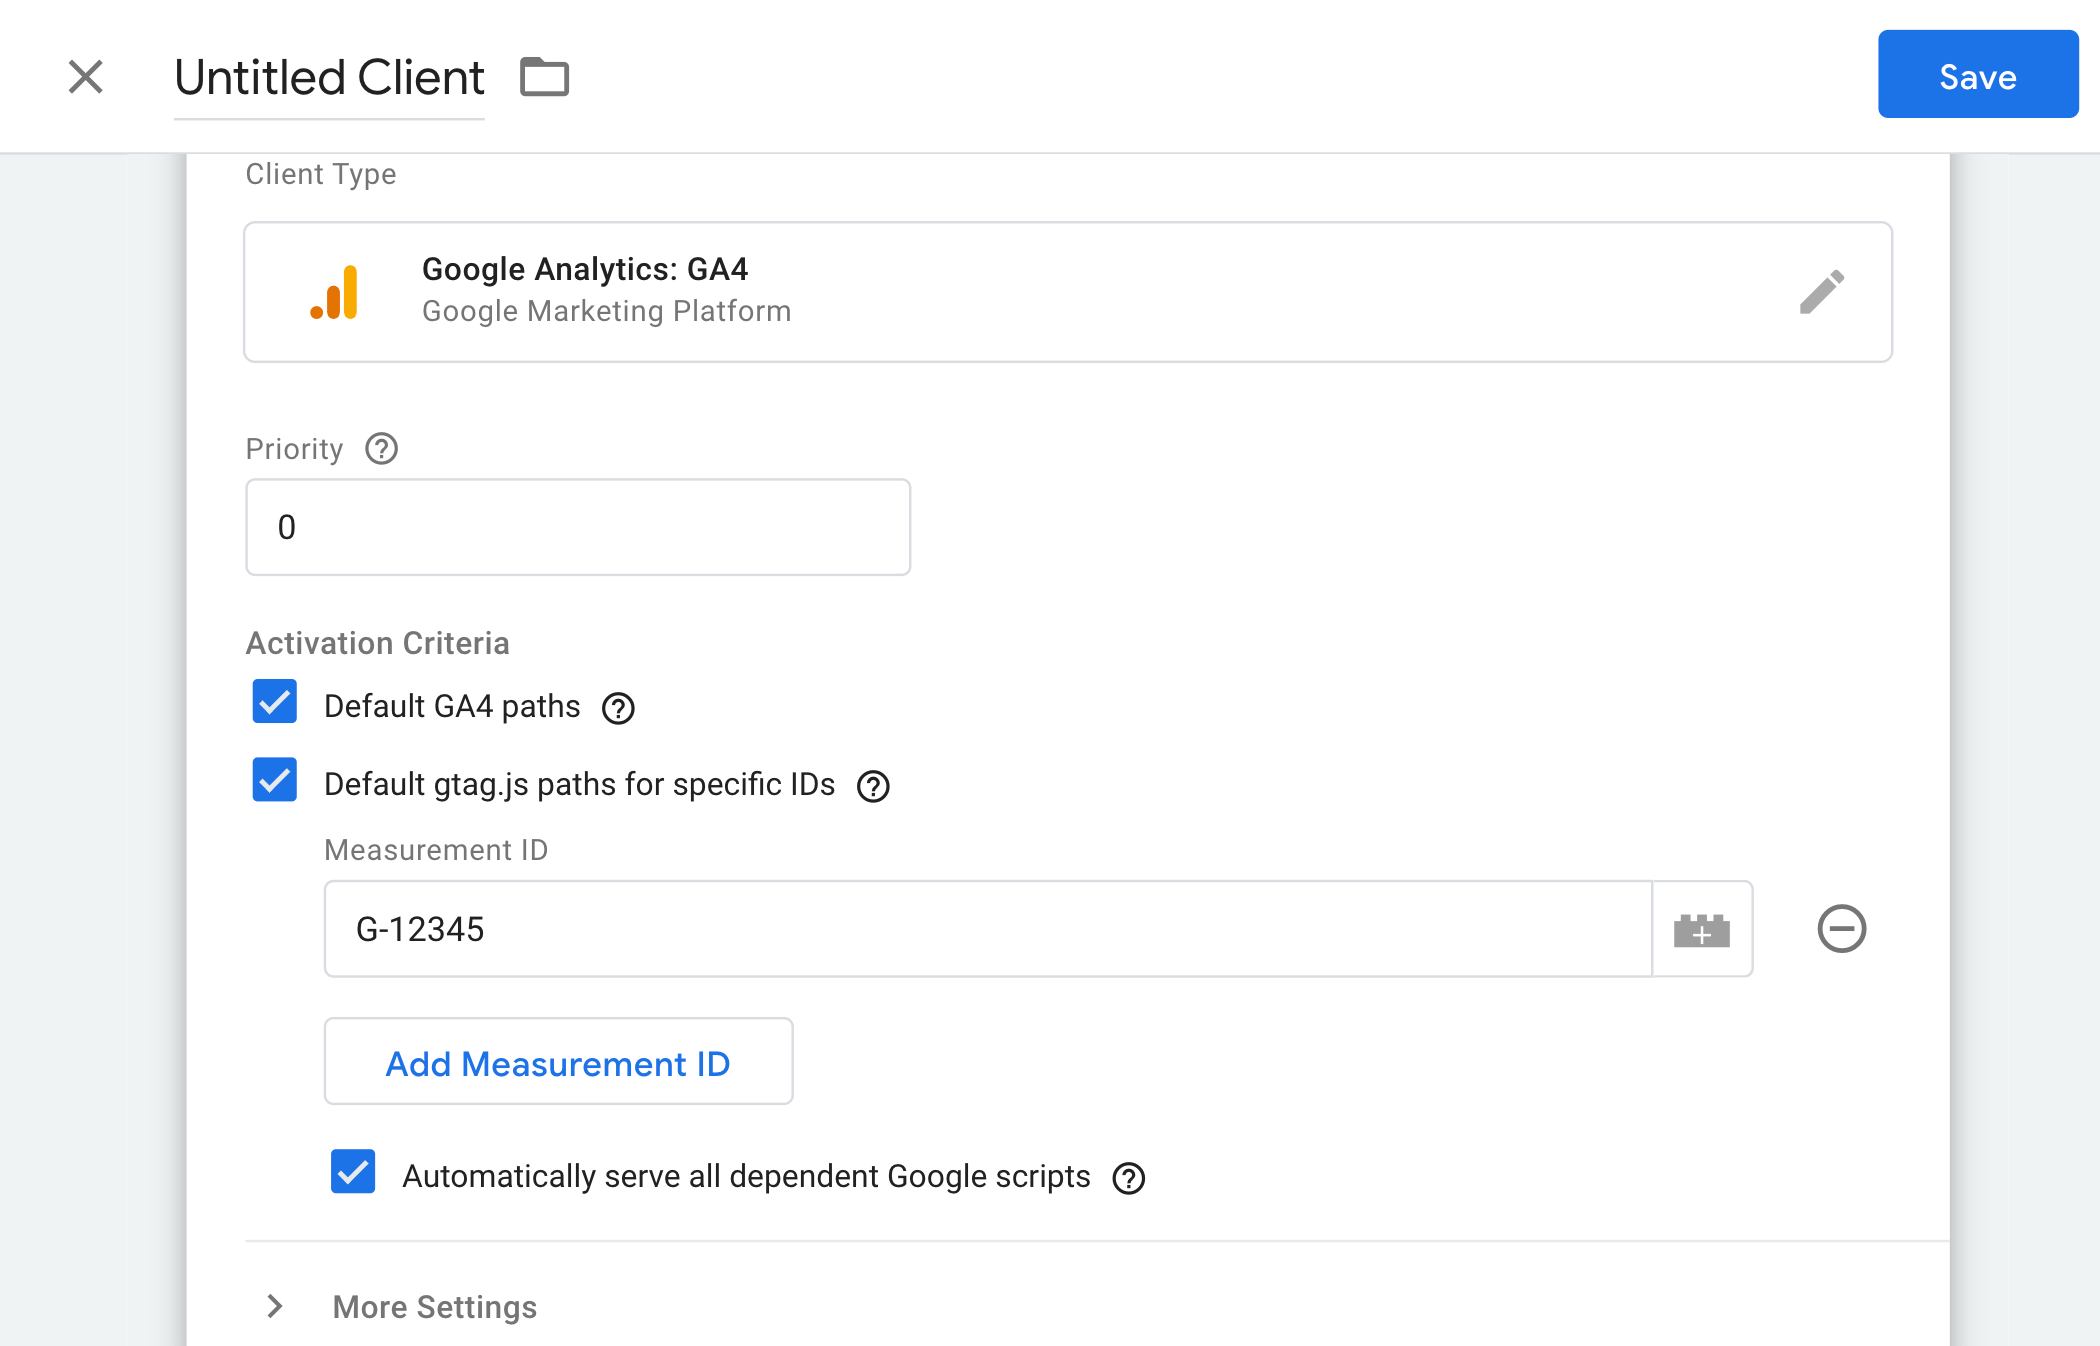 Configuración del cliente Google Analytics: GA4